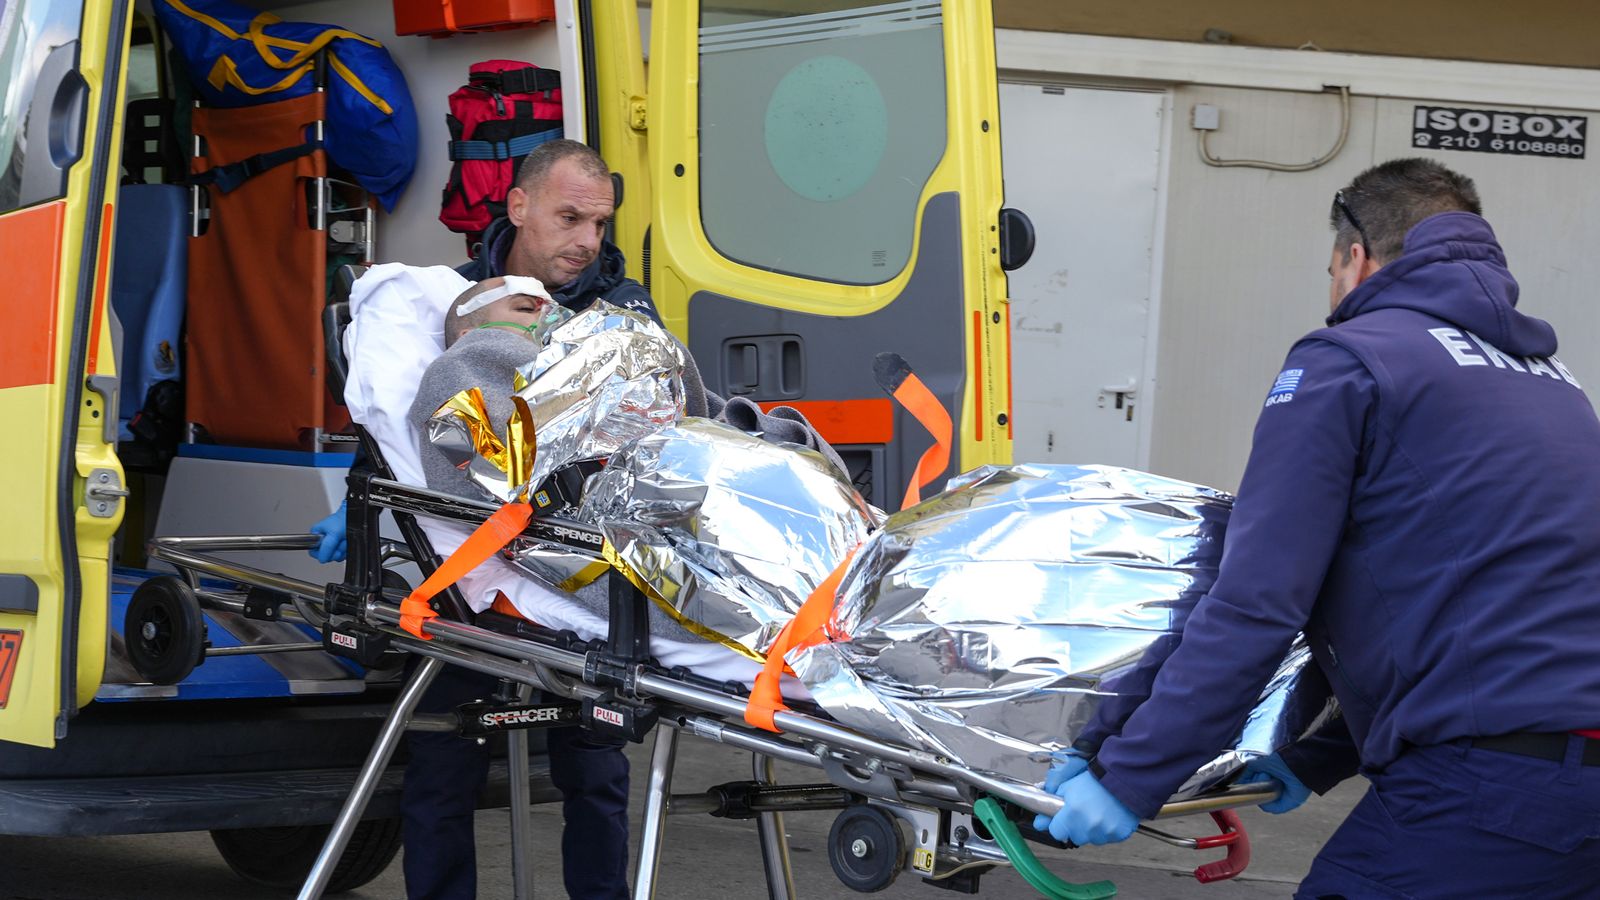 Ein Frachtschiff sank in der Nähe von Griechenland, 13 Besatzungsmitglieder wurden vermisst  Weltnachrichten